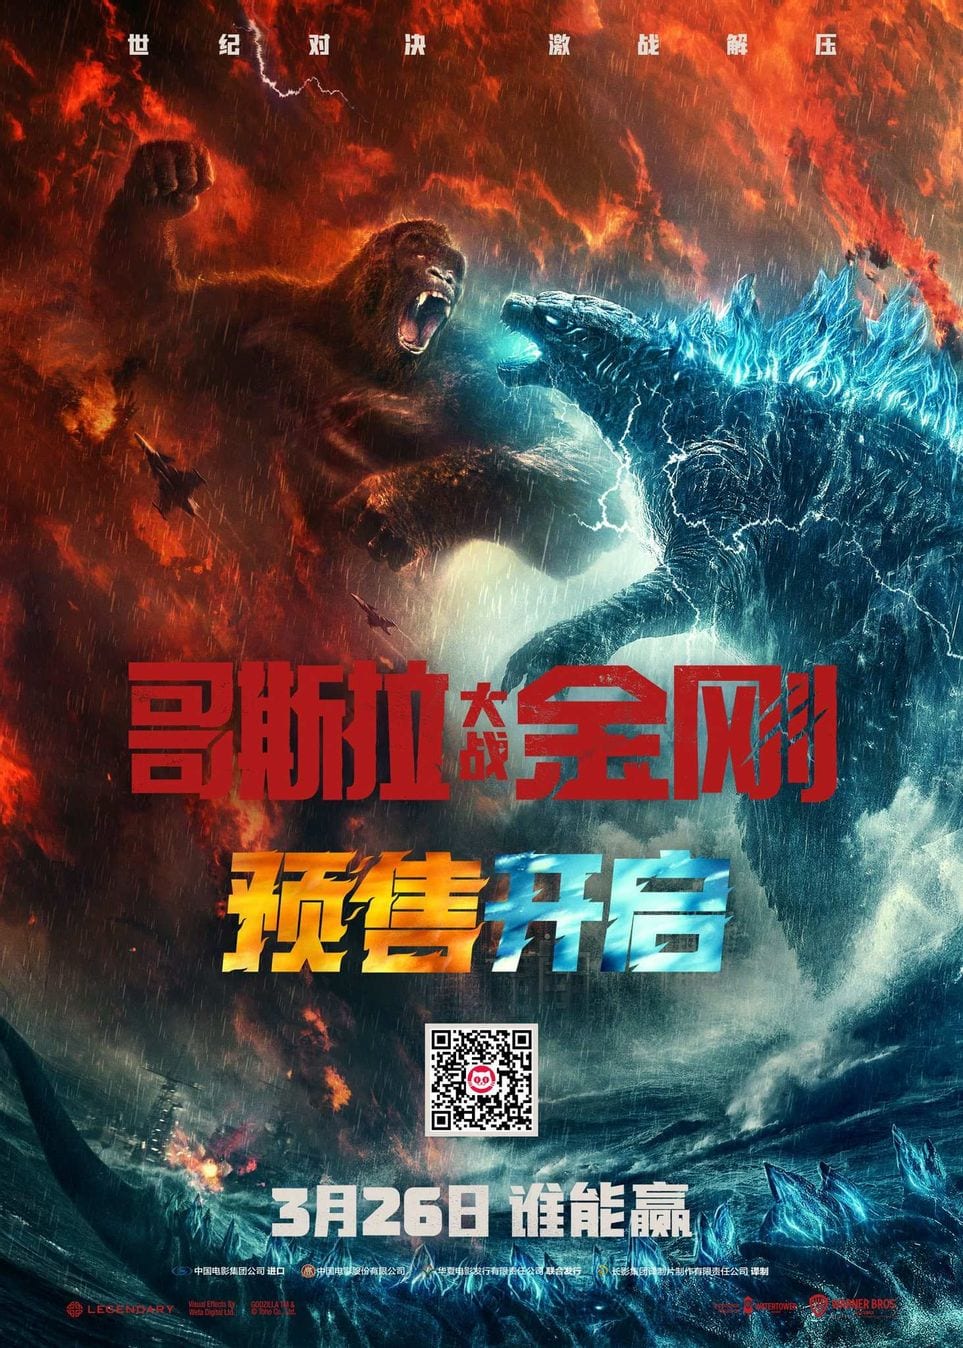 Godzilla-Vs-Kong